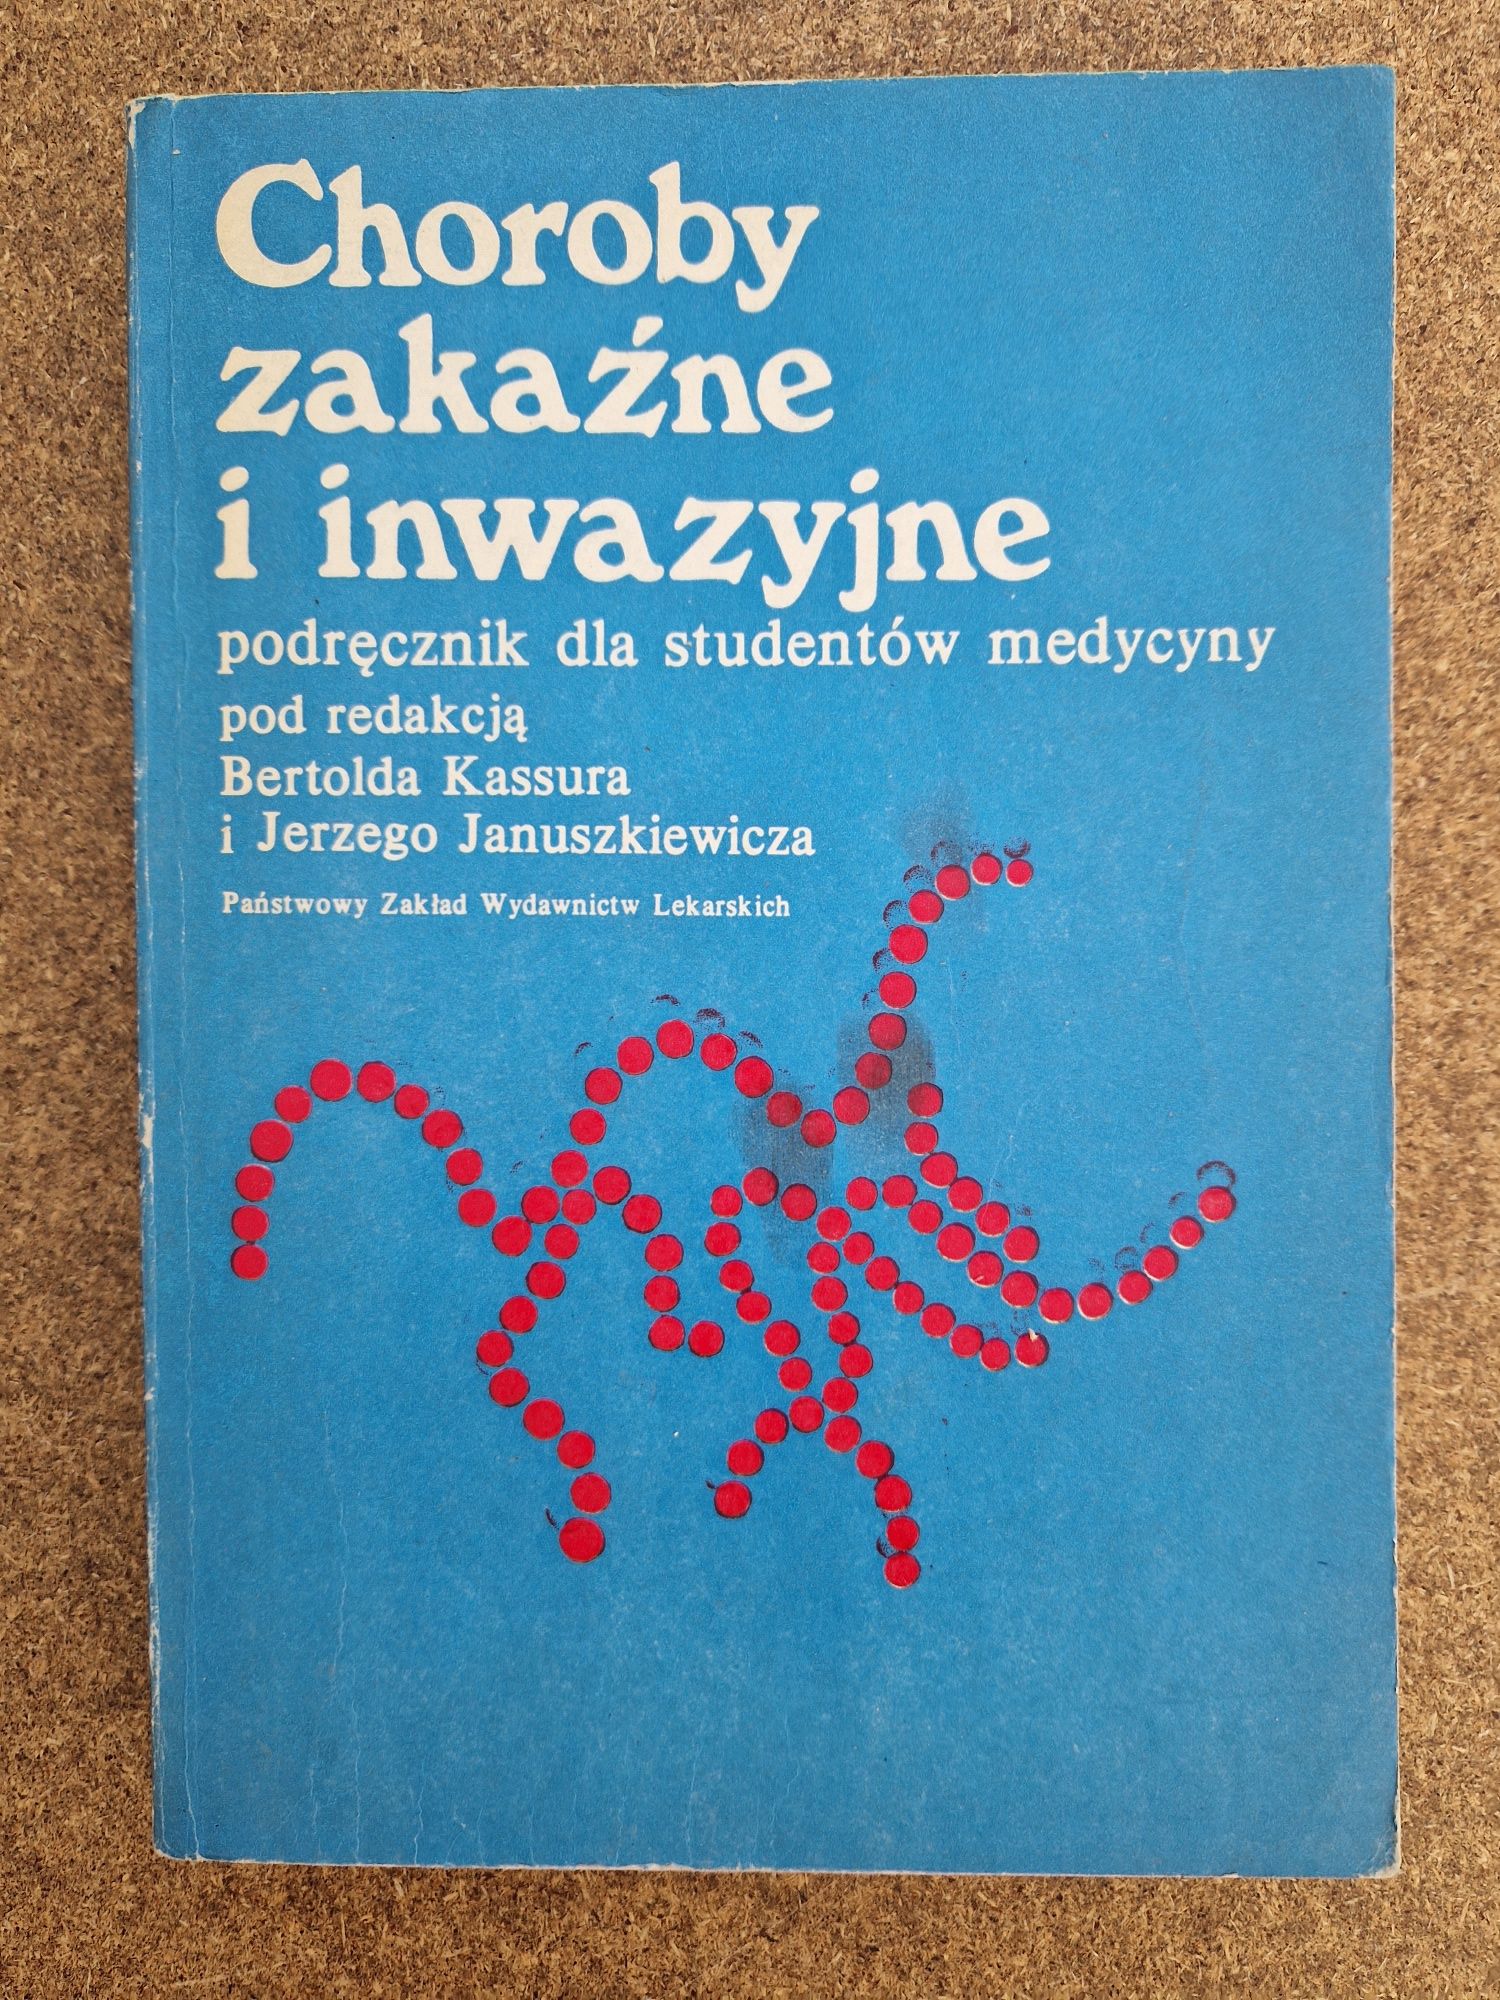 Choroby zakaźne i inwazyjne B.Kassur J.Januszkiewicz